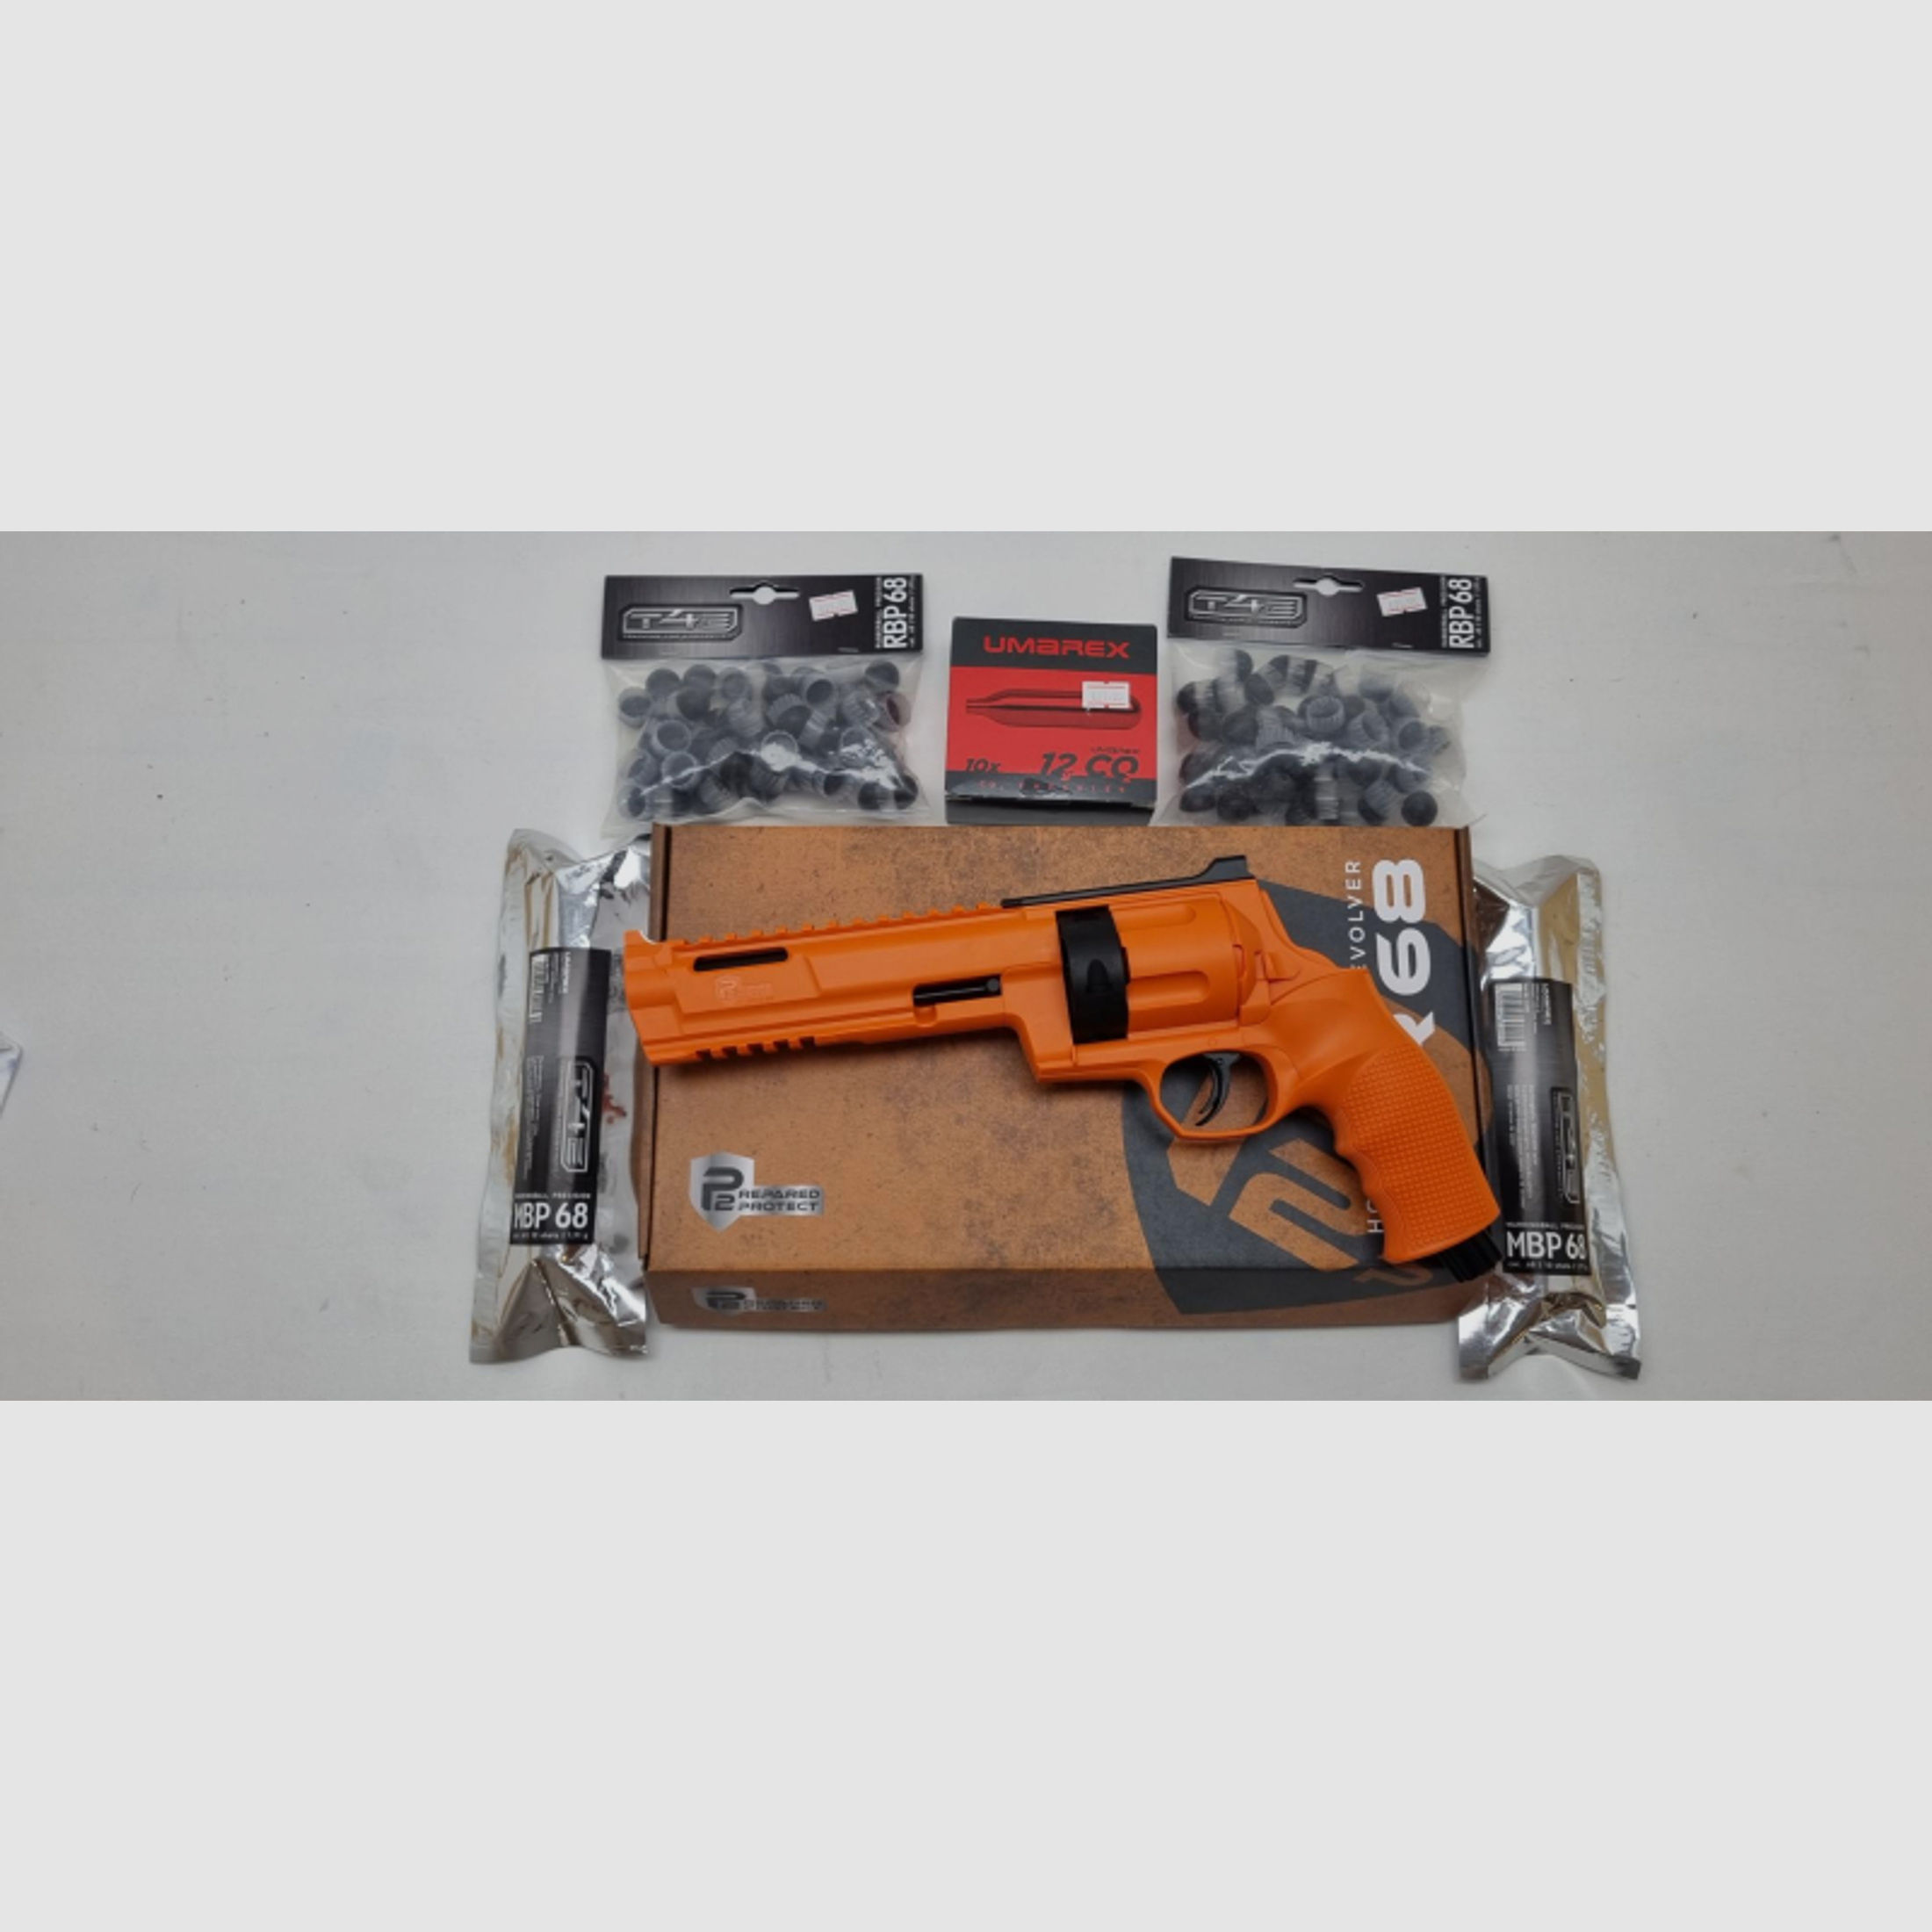 KOMPLETTSET Revolver P2P HDR 68 Ram *Orange*